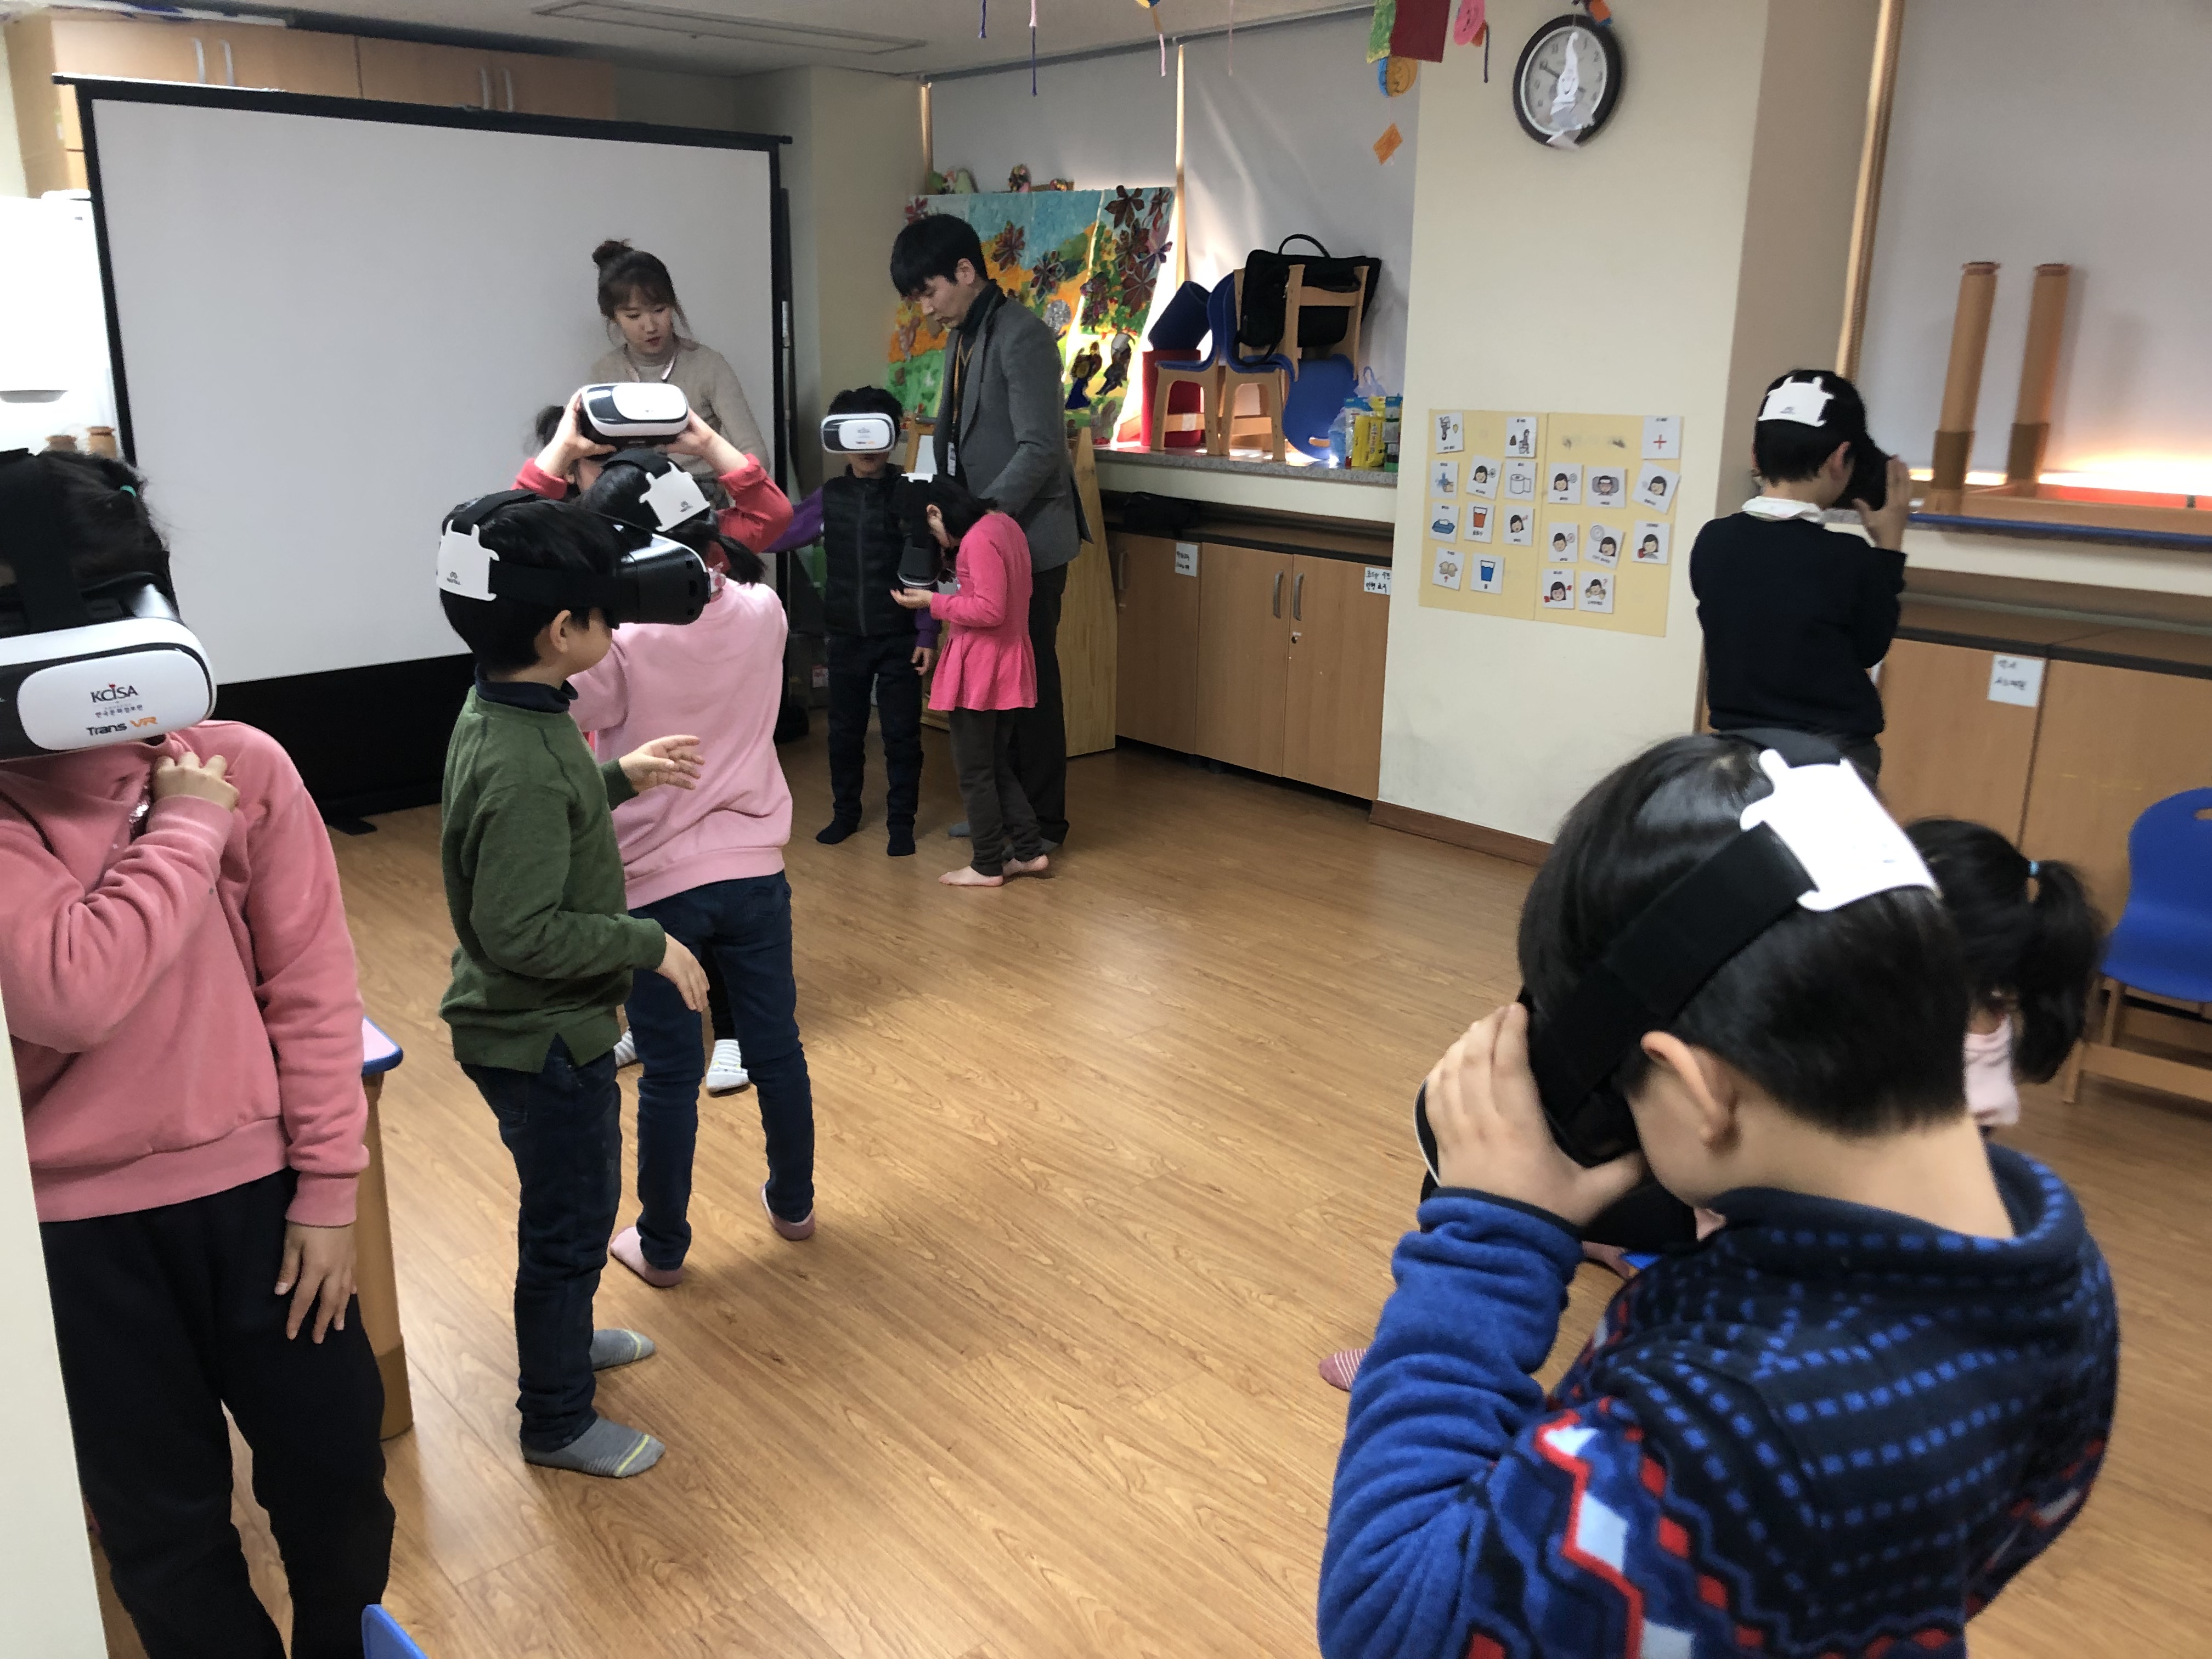 마포장애인 복지관을 방문하여 문화체험의 기회가 적었던 아동들에게 VR 콘텐츠 체험을 진행하는 스케치